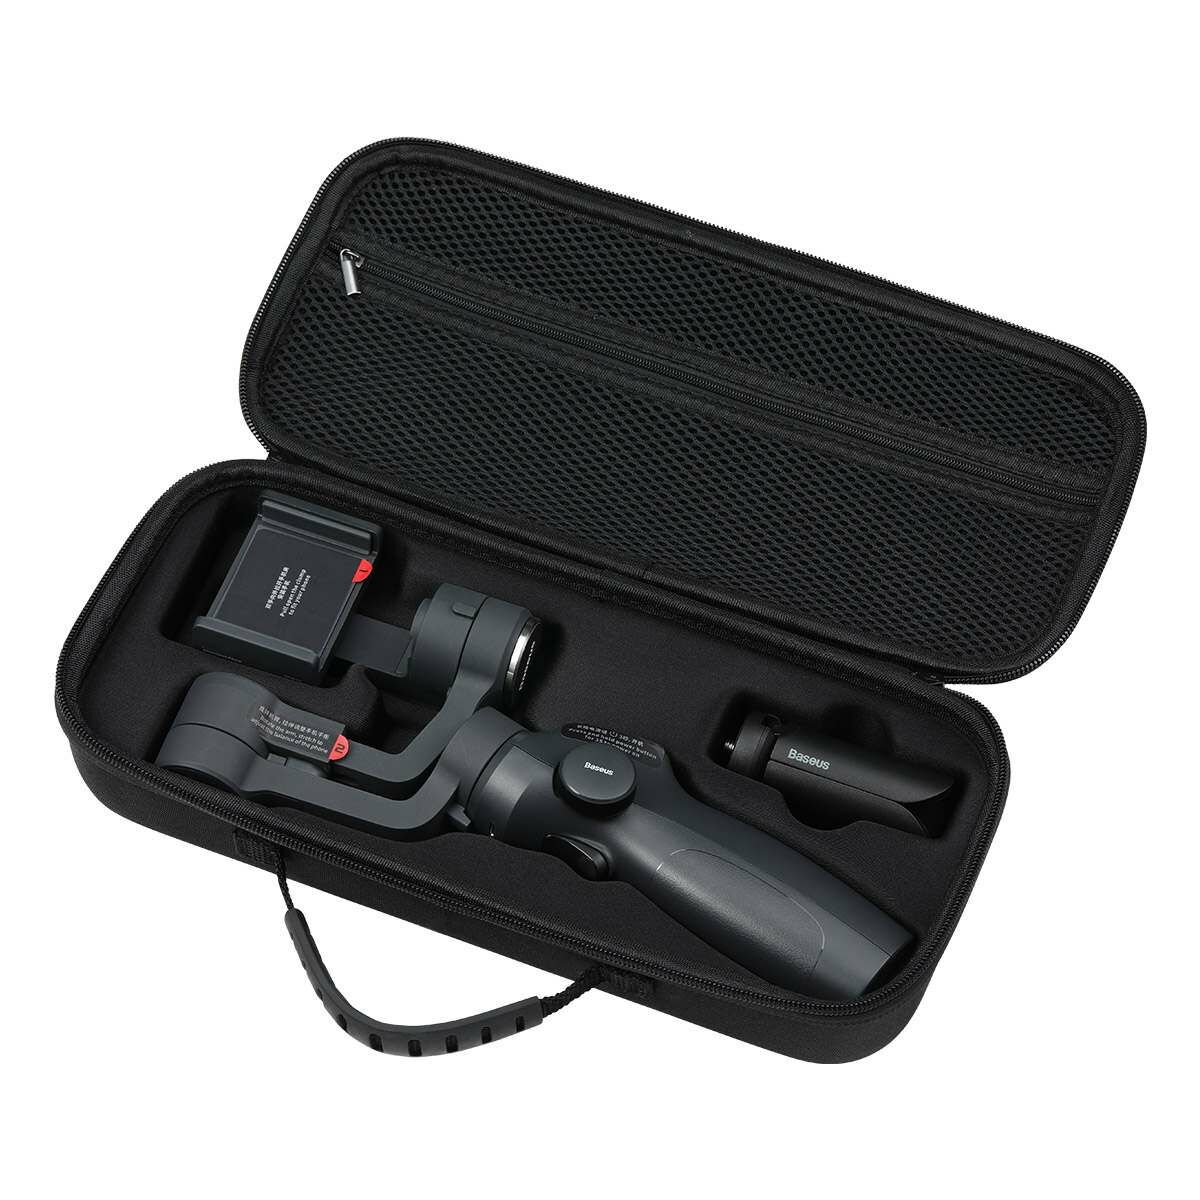 Baseus Video kiegészítő, Gimbal Control Handheld tároló és rendező tartó, fekete (SUYT-F01)